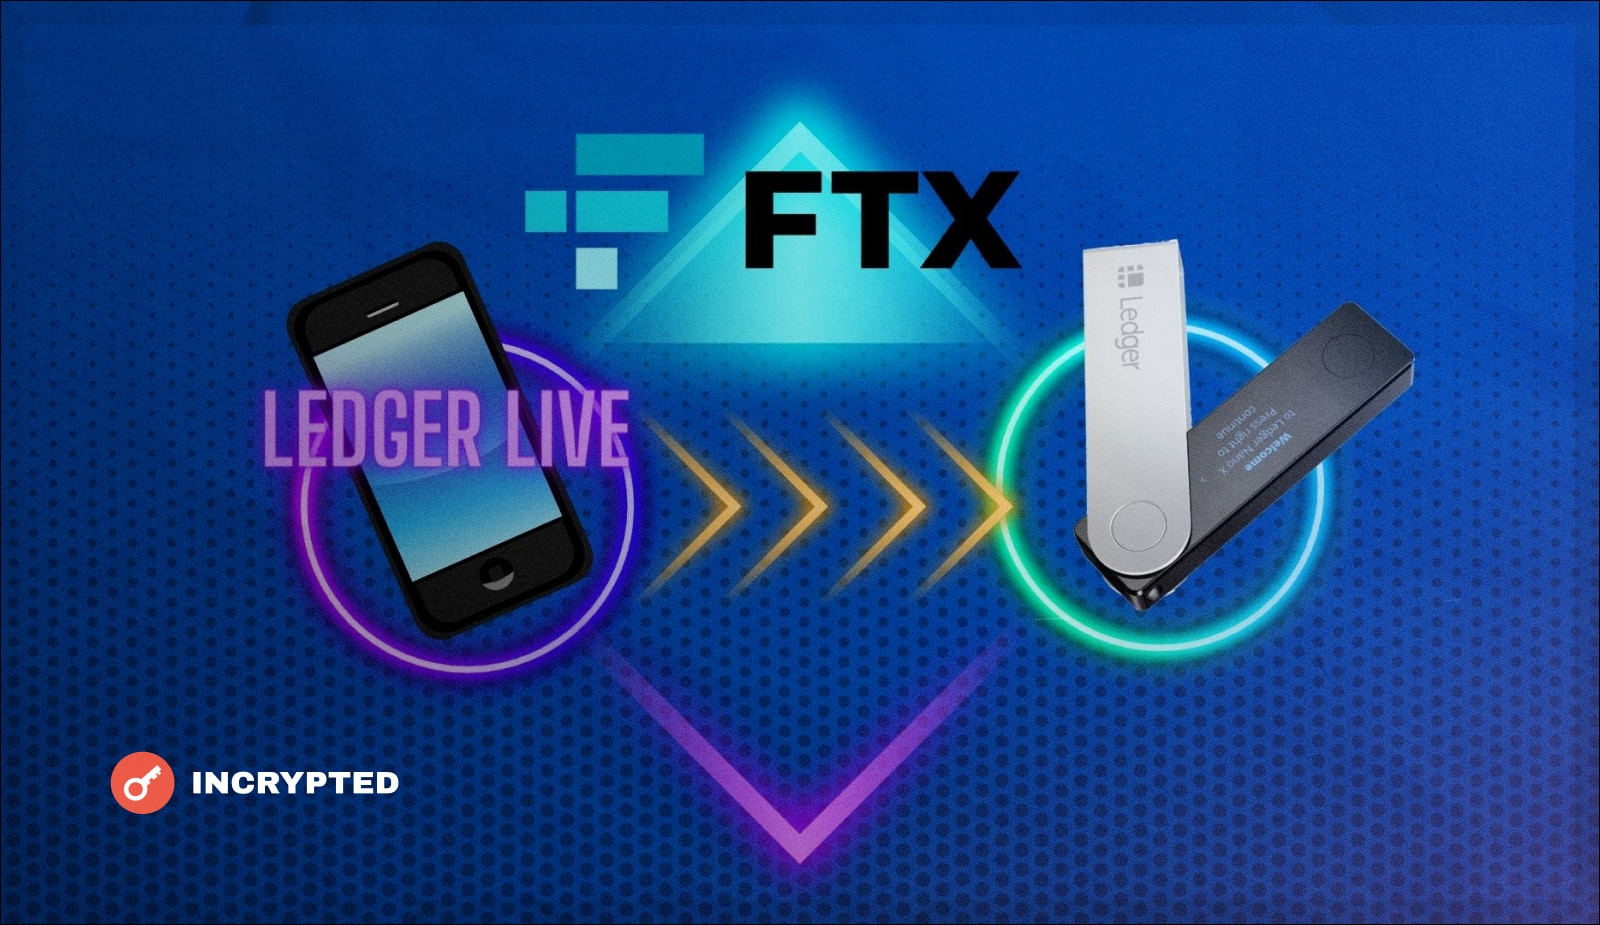 Ledger добавил возможность обмена криптовалюты через FTX в приложении Ledger Live. Заглавный коллаж новости.